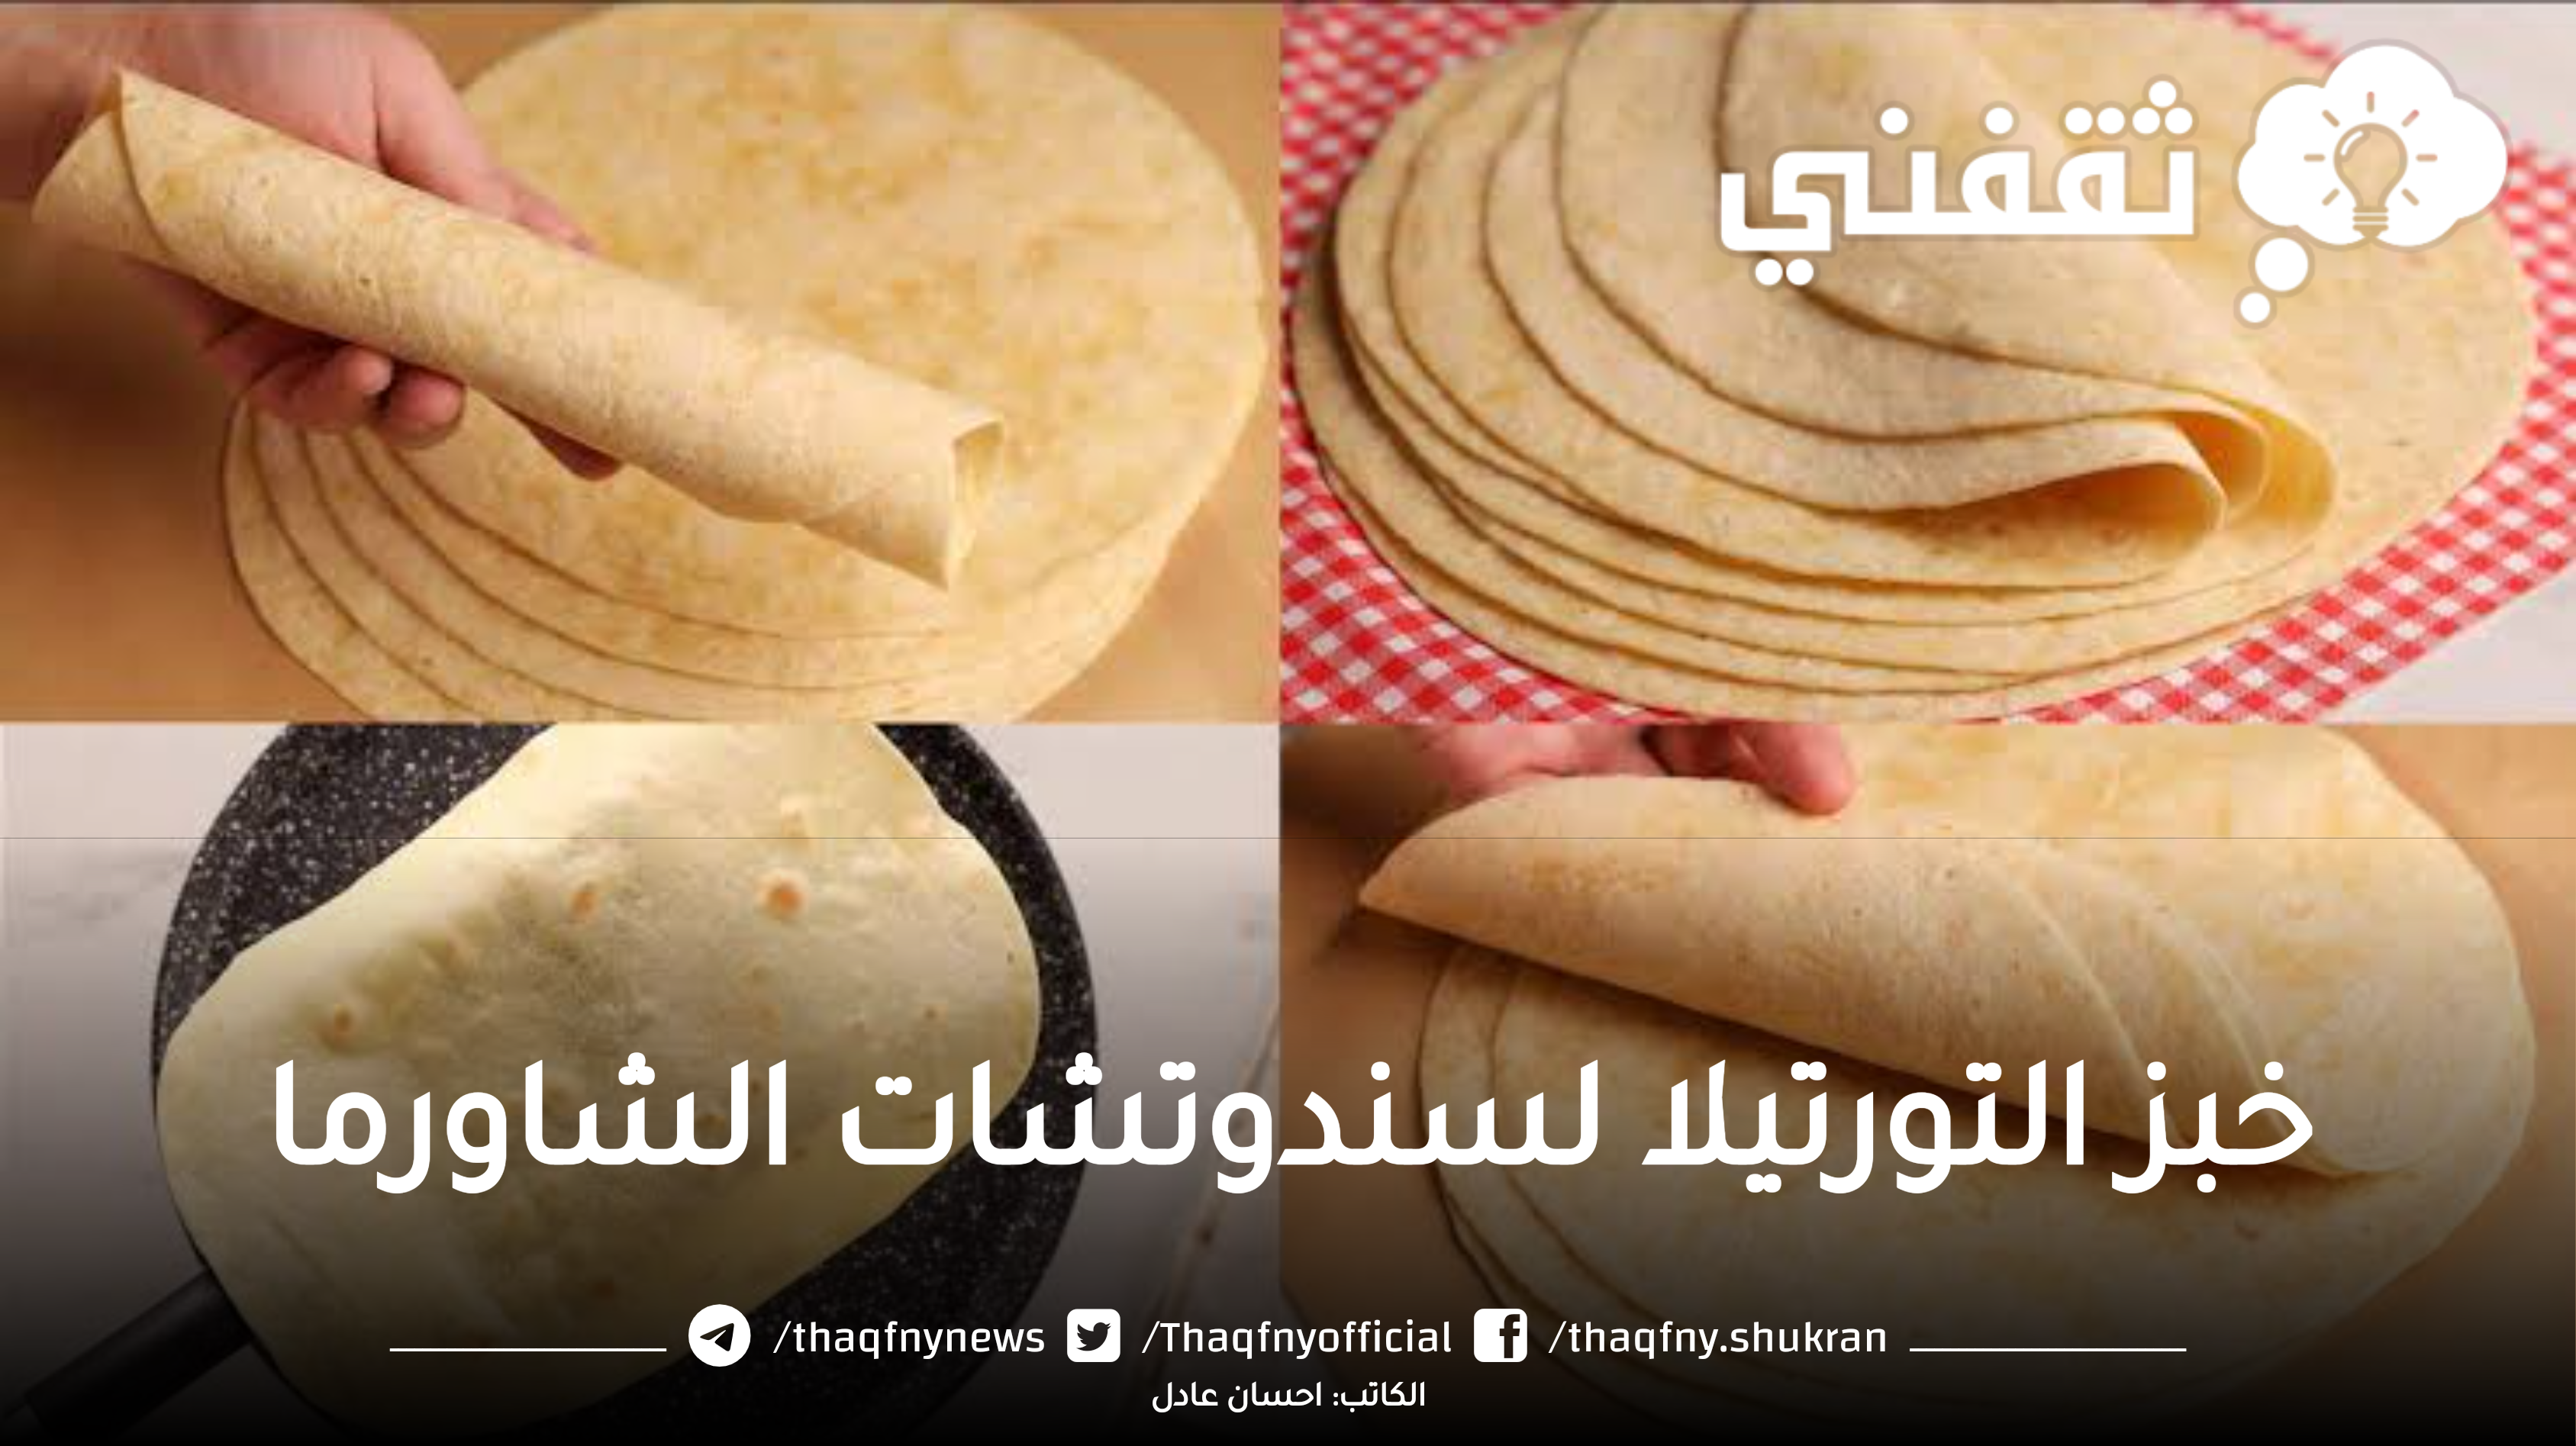 بعجينة مظبوطة طريقة عمل خبز التورتيلا على أصوله بخطوات سهلة وسريعة وبطعم طري ولذيذ